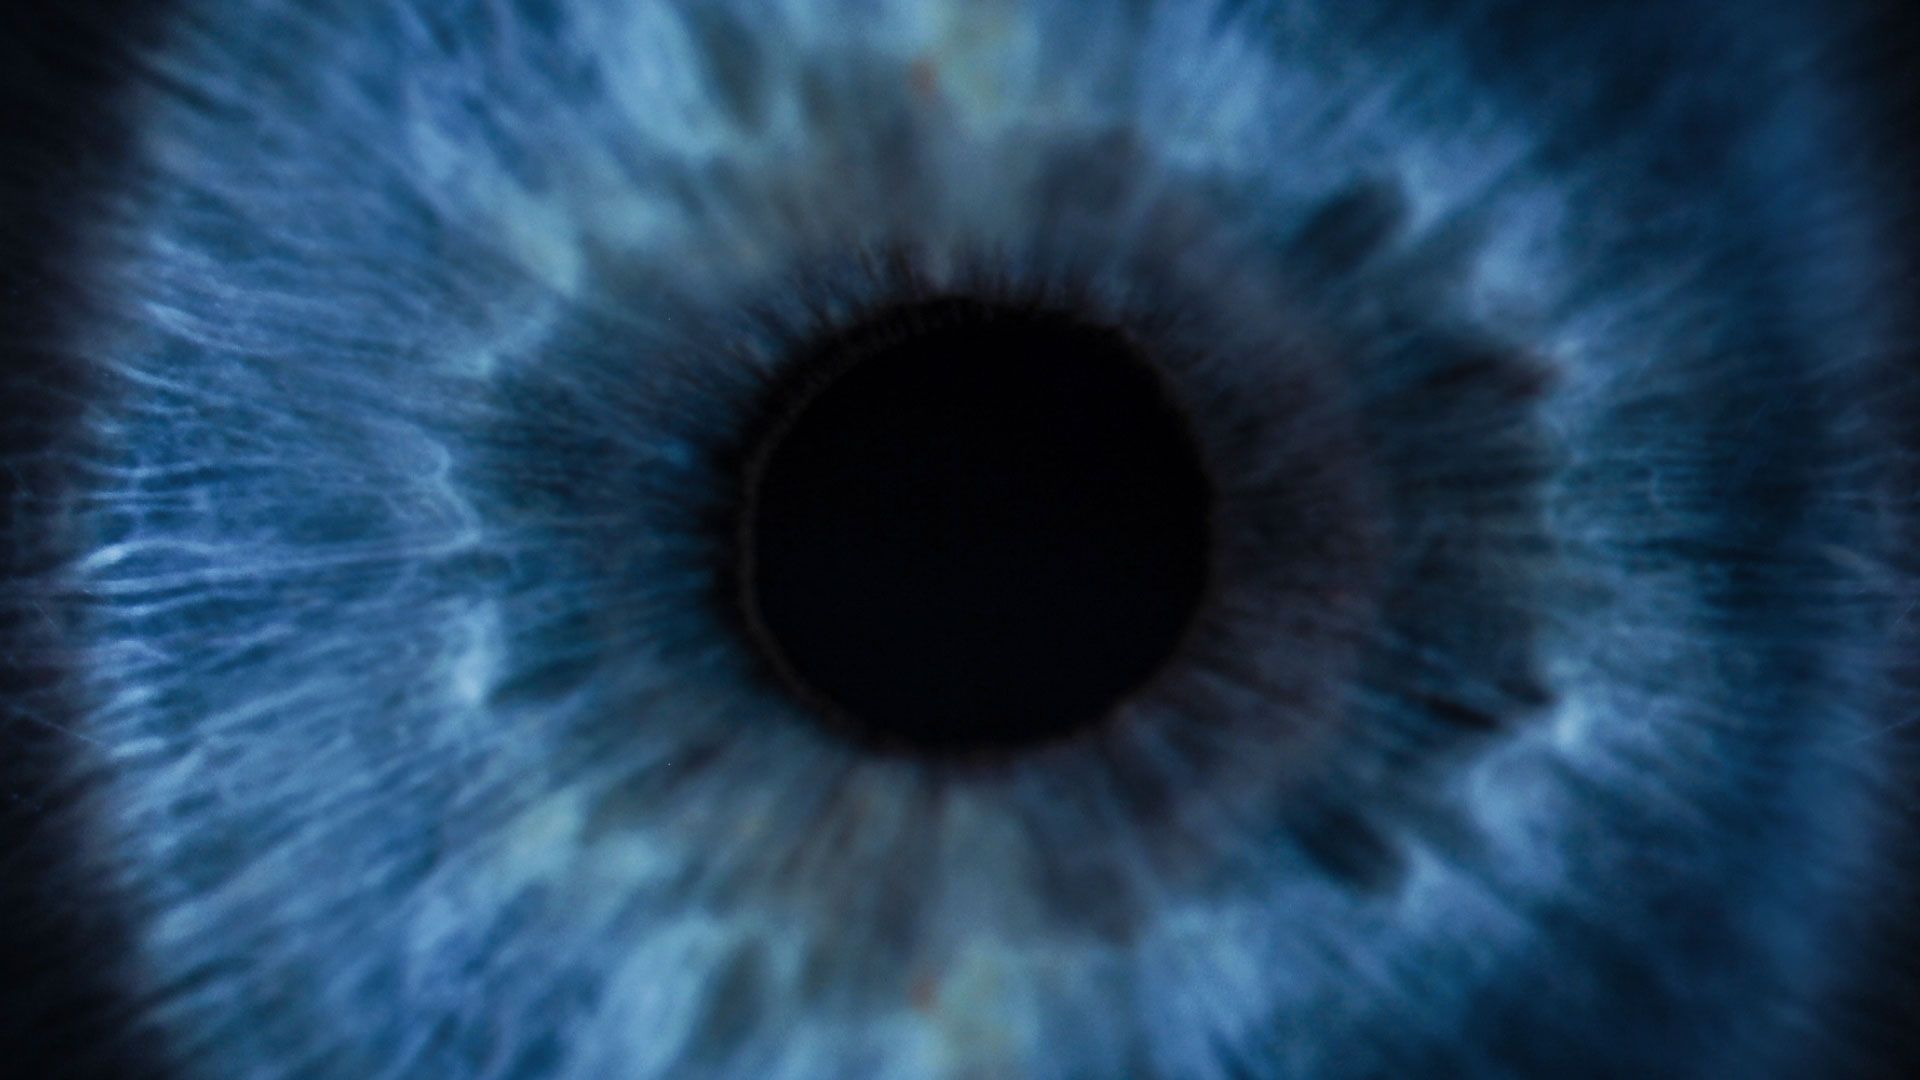 Closeup shot of a human eye